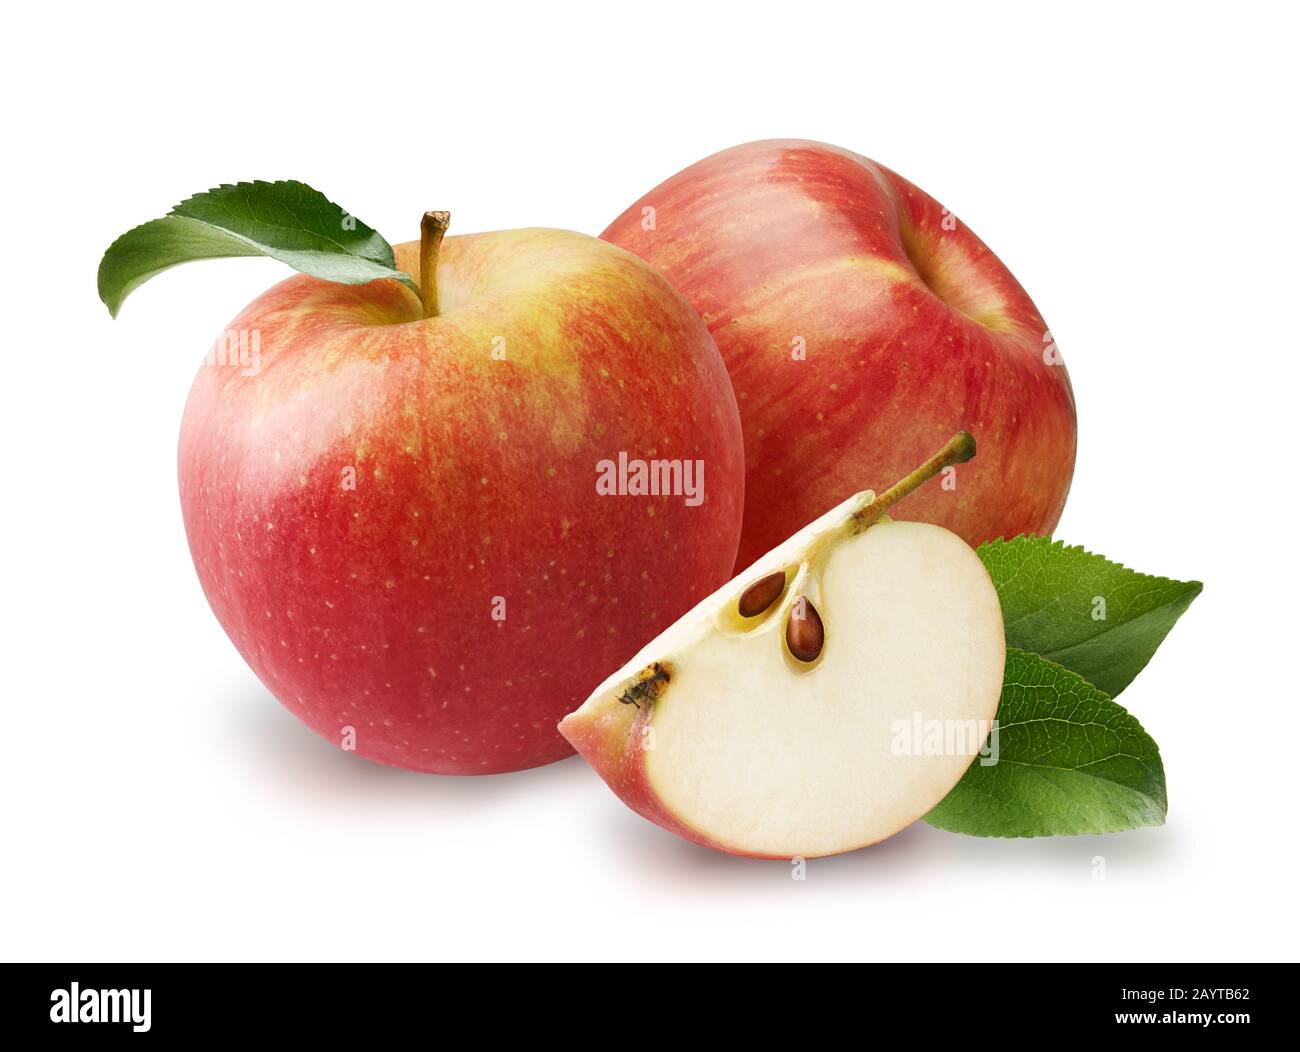 Schöne zwei rote Äpfel mit apfelblättern und apfelscheibe isoliert auf weißem Hintergrund. Stockfoto